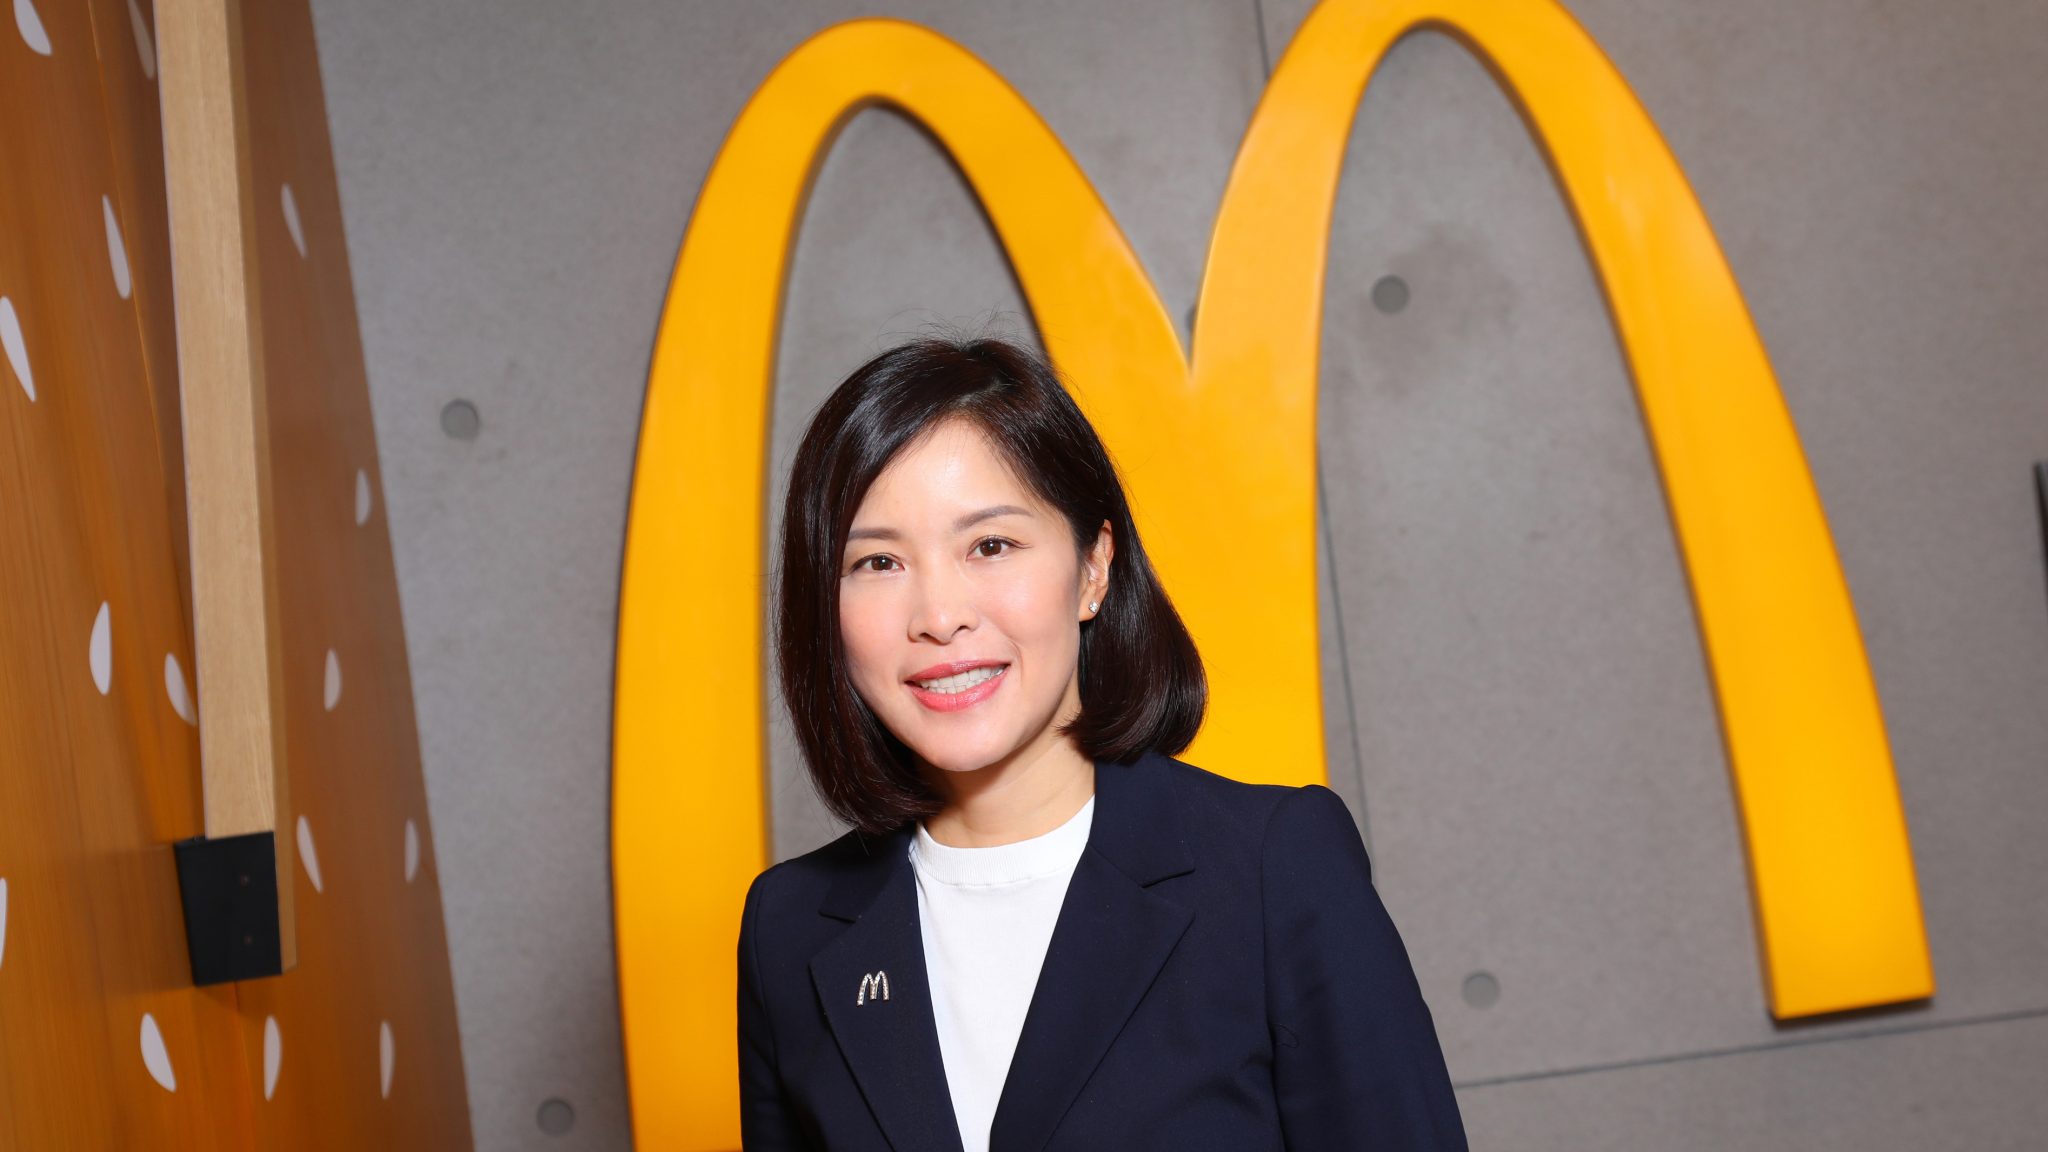 Randy Lai, CEO of McDonald's Hong Kong